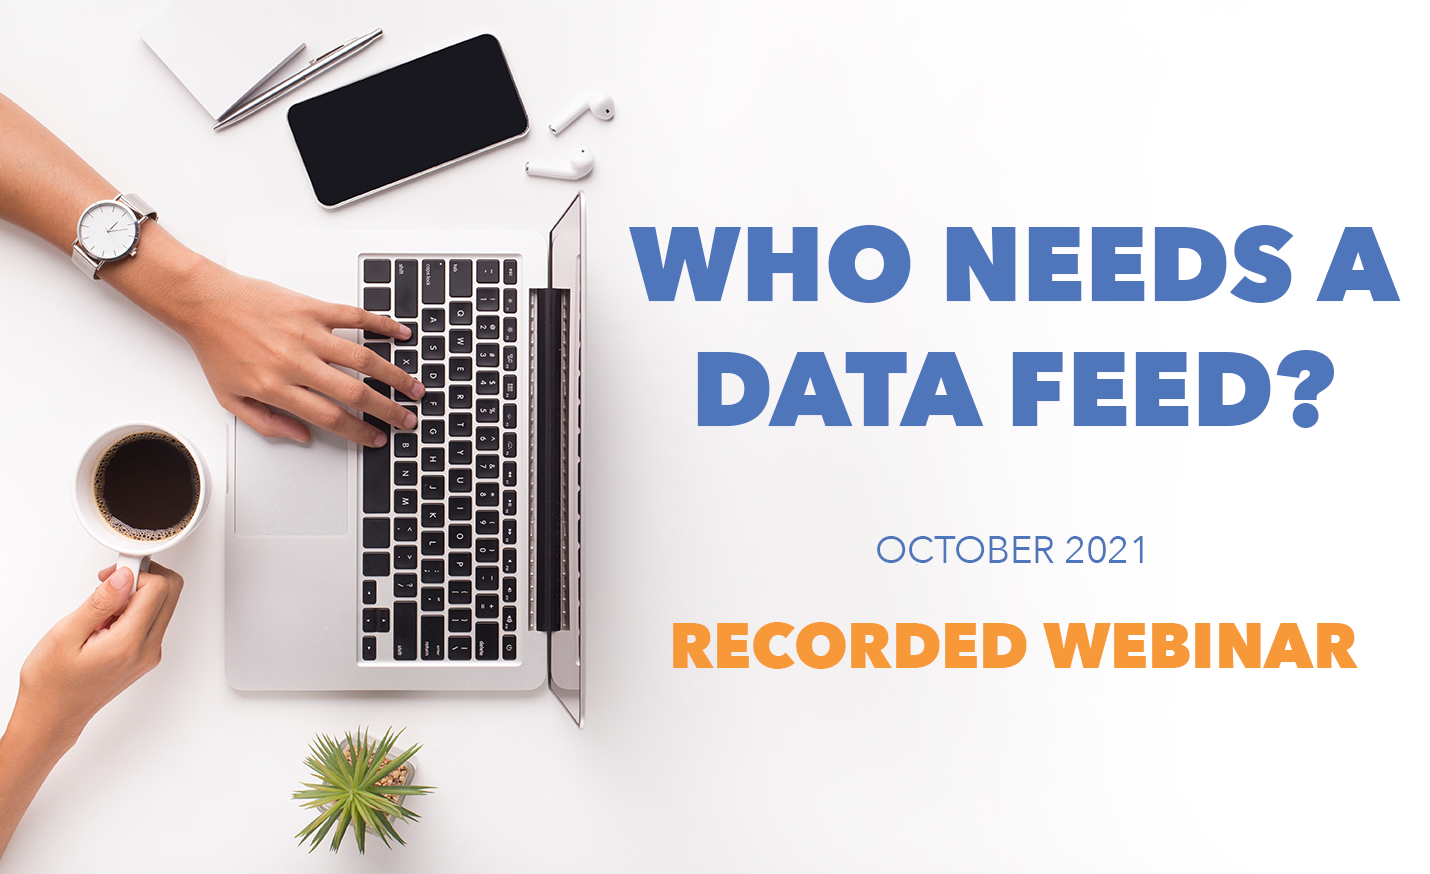 Flexmls IDX webinar on data feeds recorded October 2021